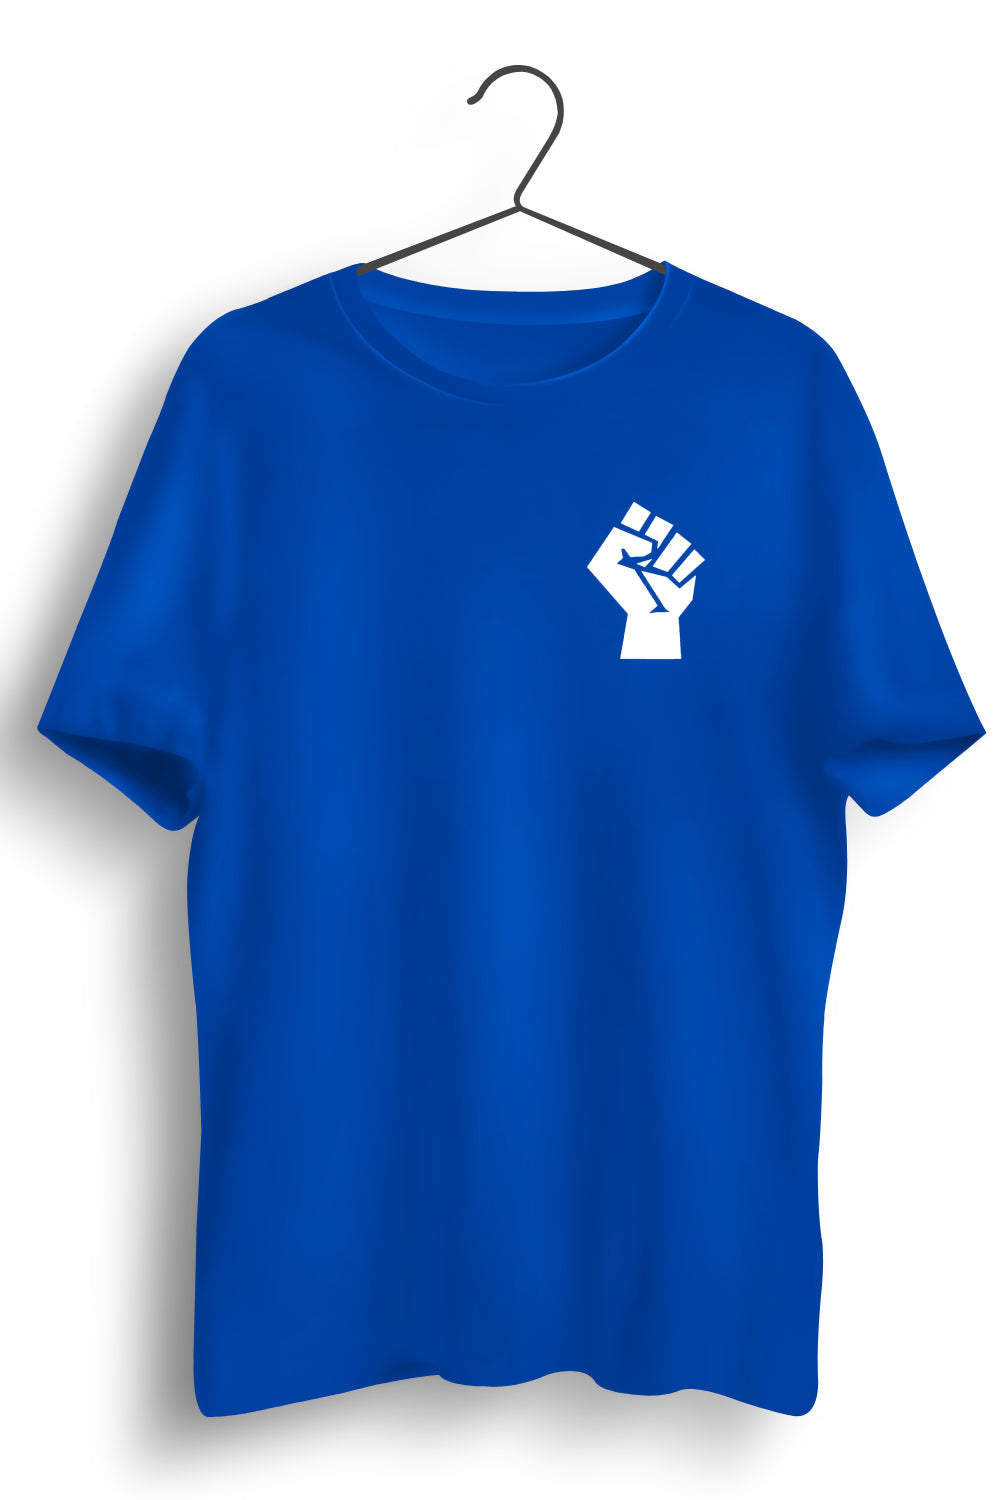 Raised Fist Graphic Printed Blue Tshirt